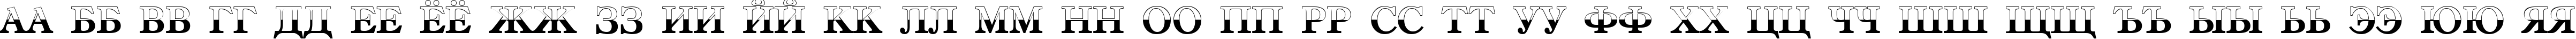 Пример написания русского алфавита шрифтом a_AntiqueTradyTtlB&W